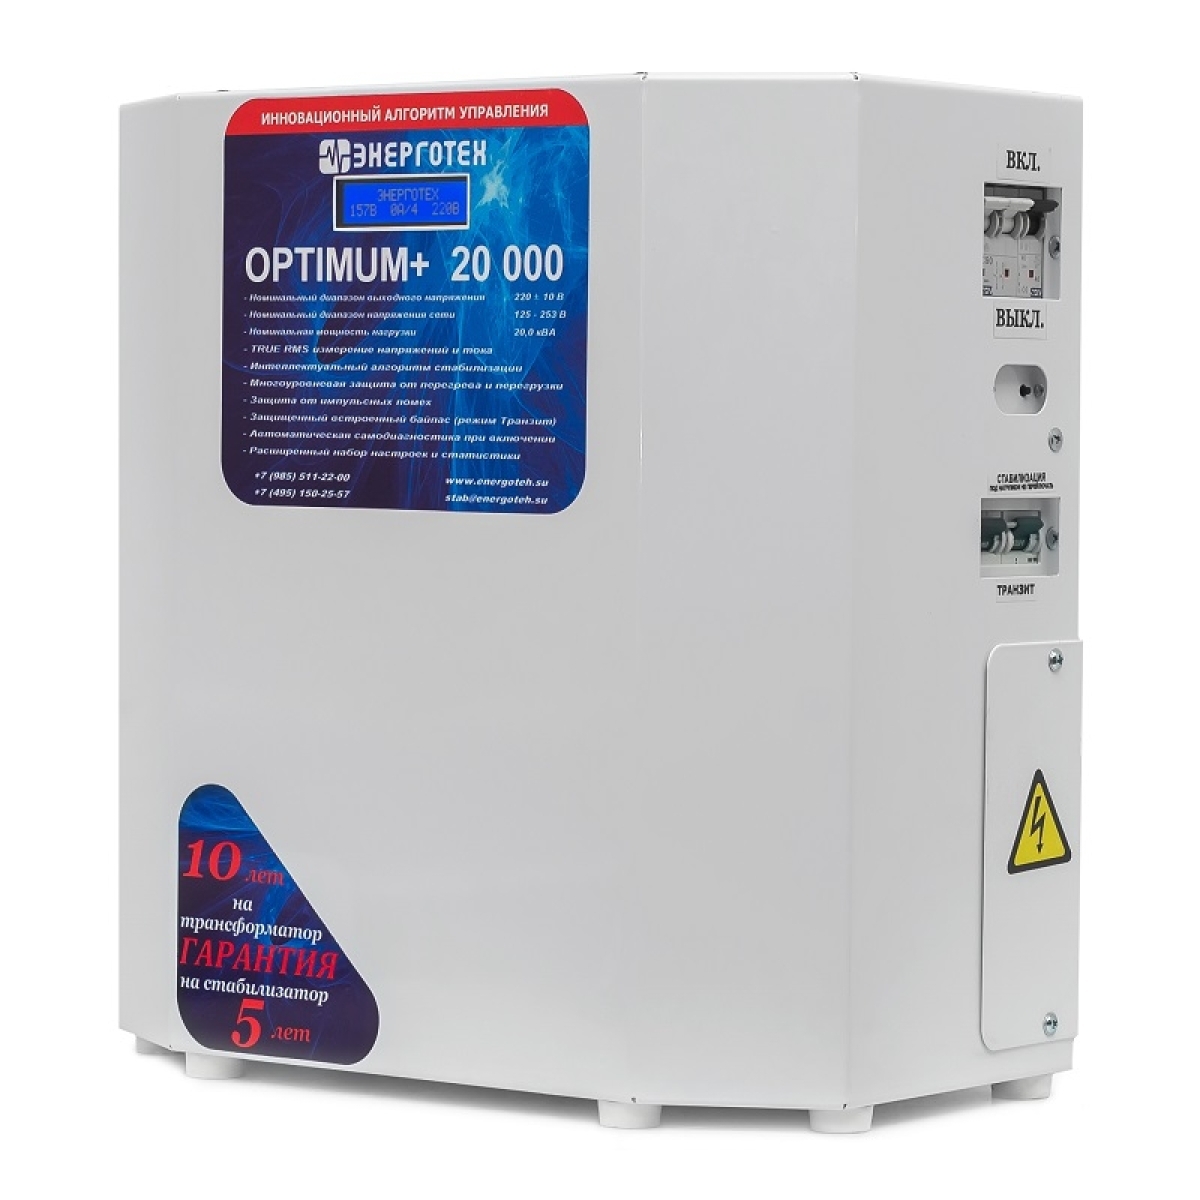 Однофазный стабилизатор Энерготех OPTIMUM+ 20000, вид справа